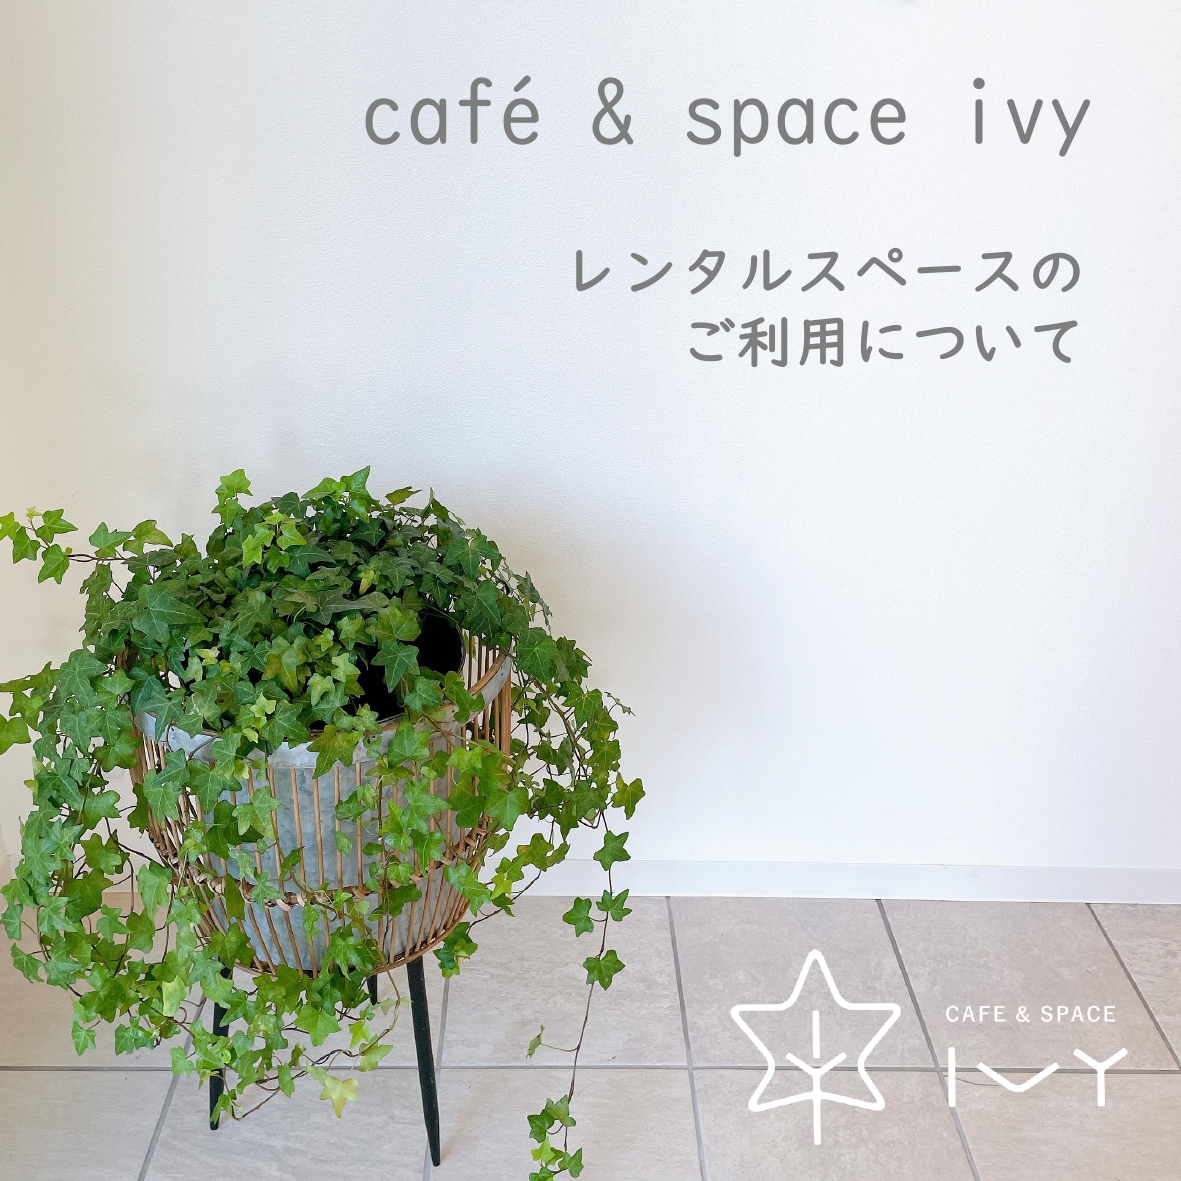 cafe & space ivyはキッチン付きレンタルスペースとしてご利用いただけます